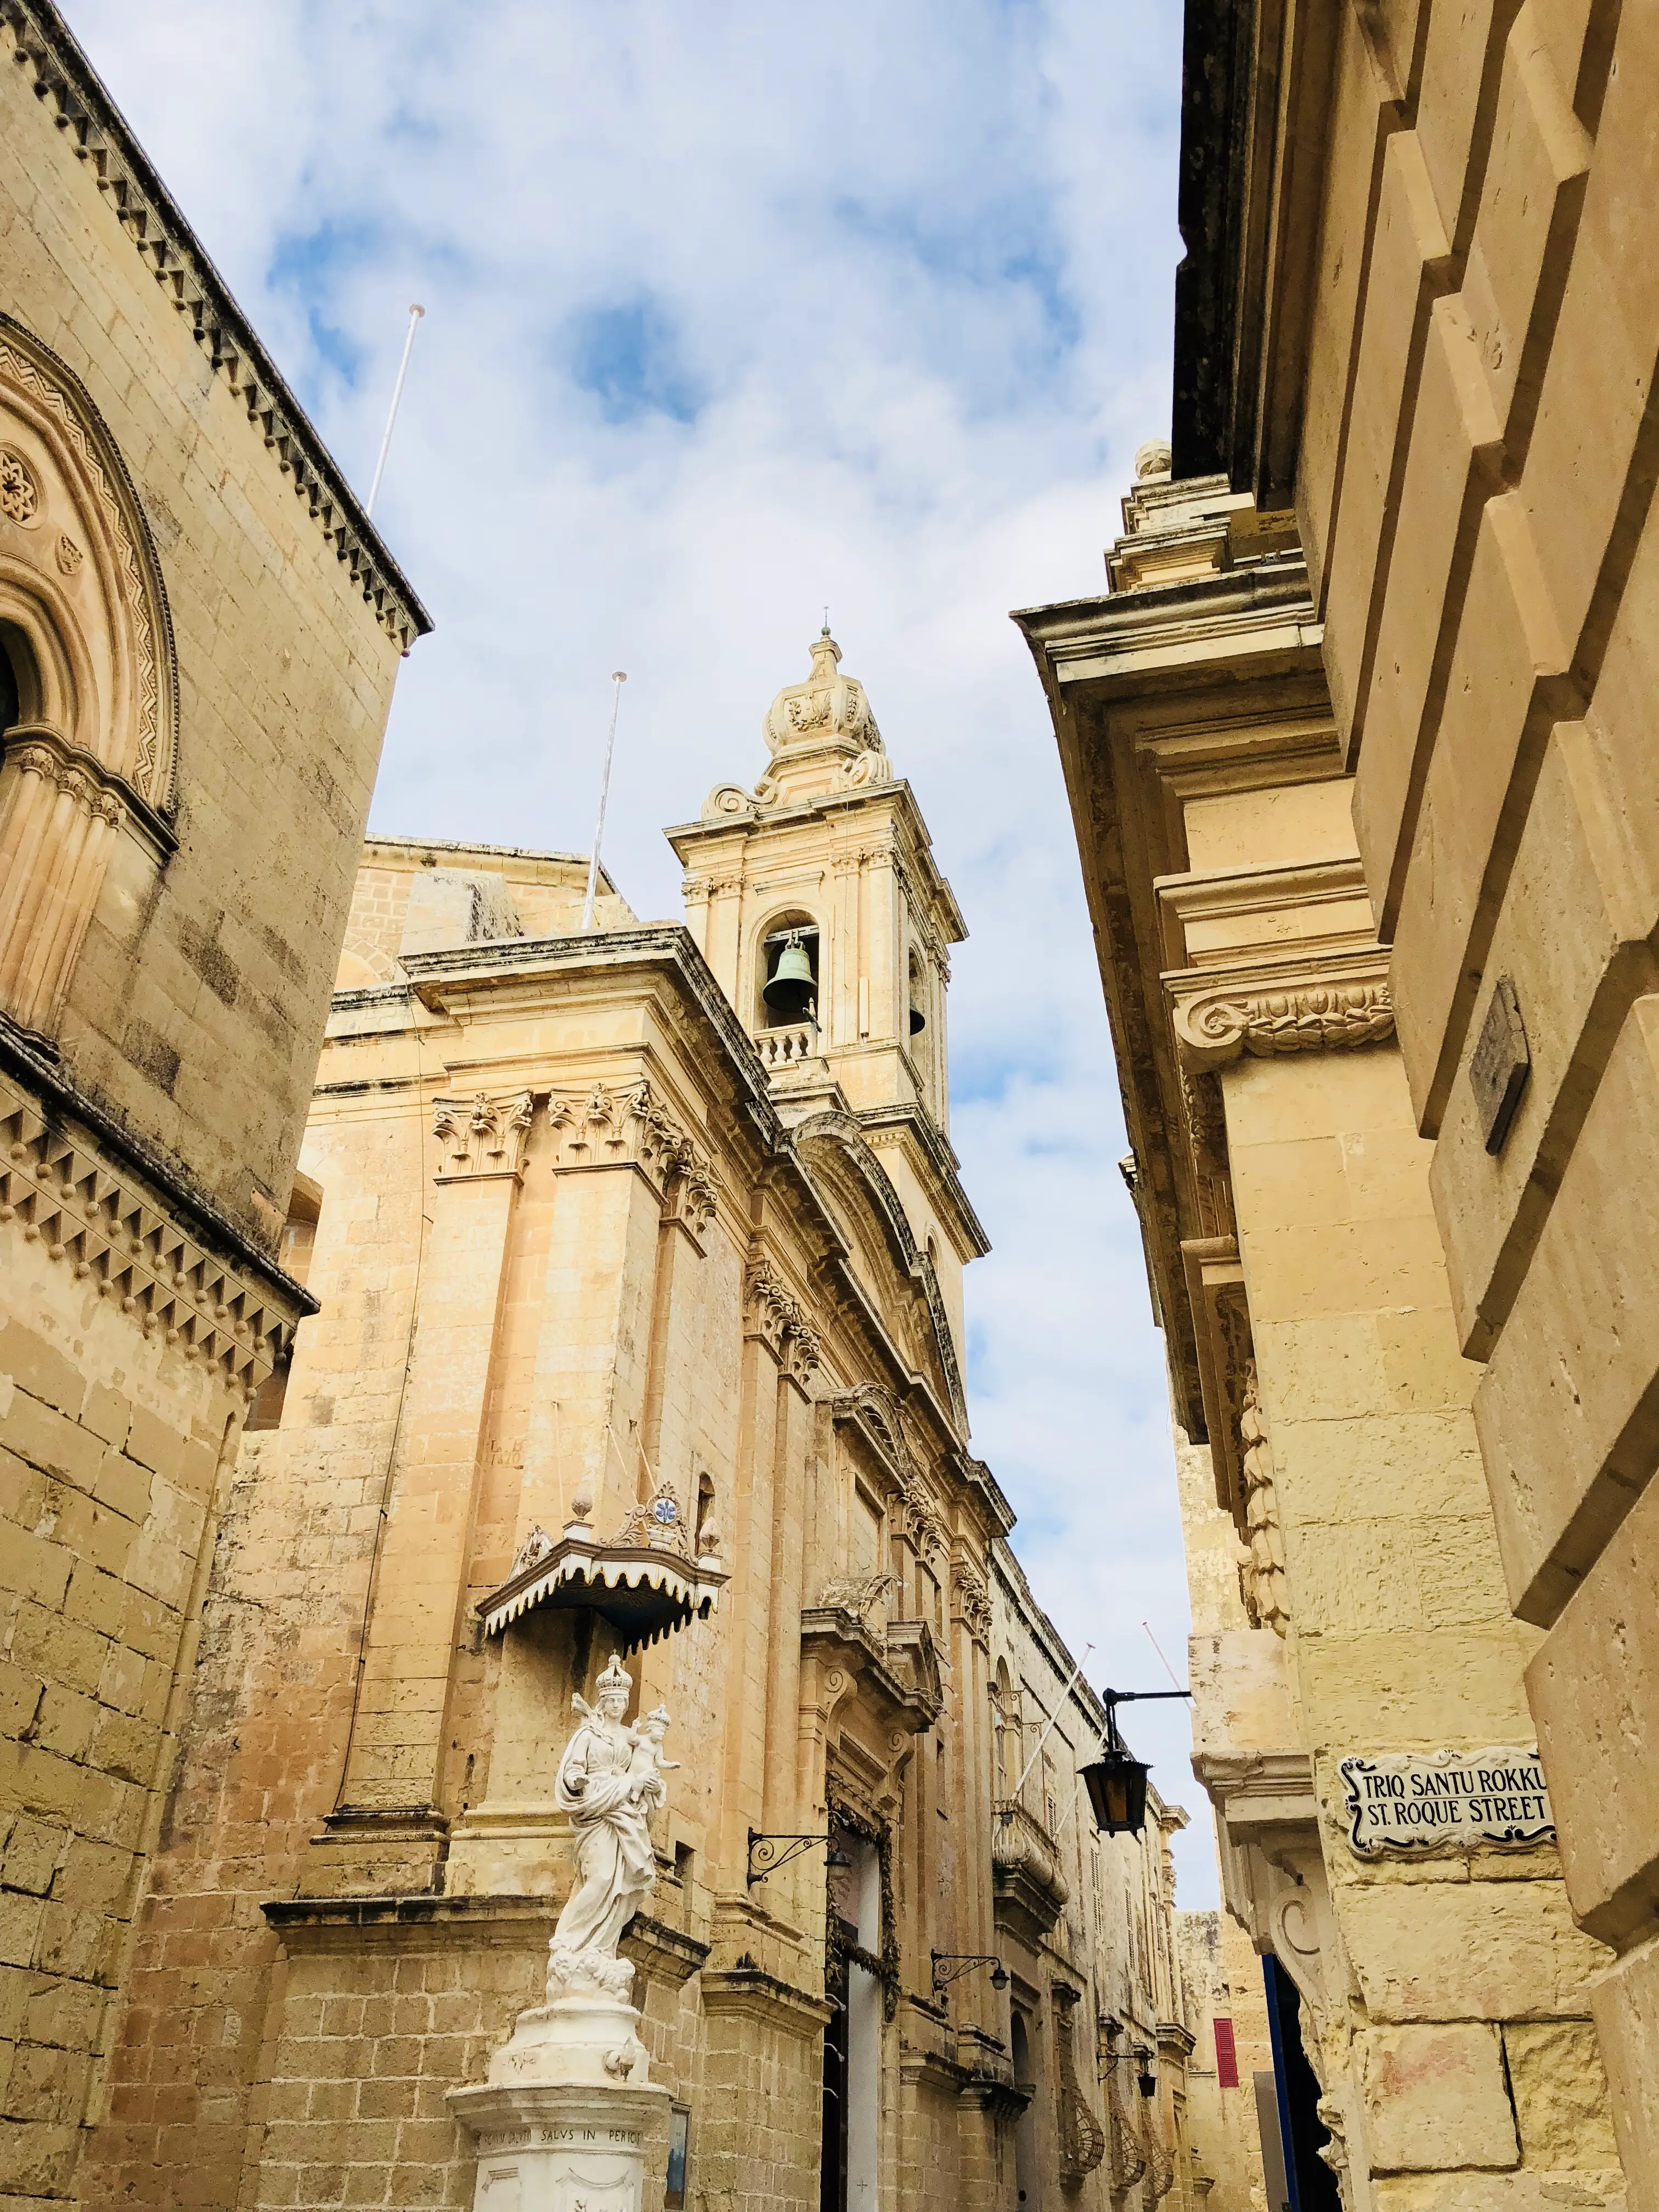 Sehenswürdigkeiten in Mdina | The silent City | Malta mit Kind und Baby | Urlaub | Familie | www.anomadabroad.com | Karmeliterkirche